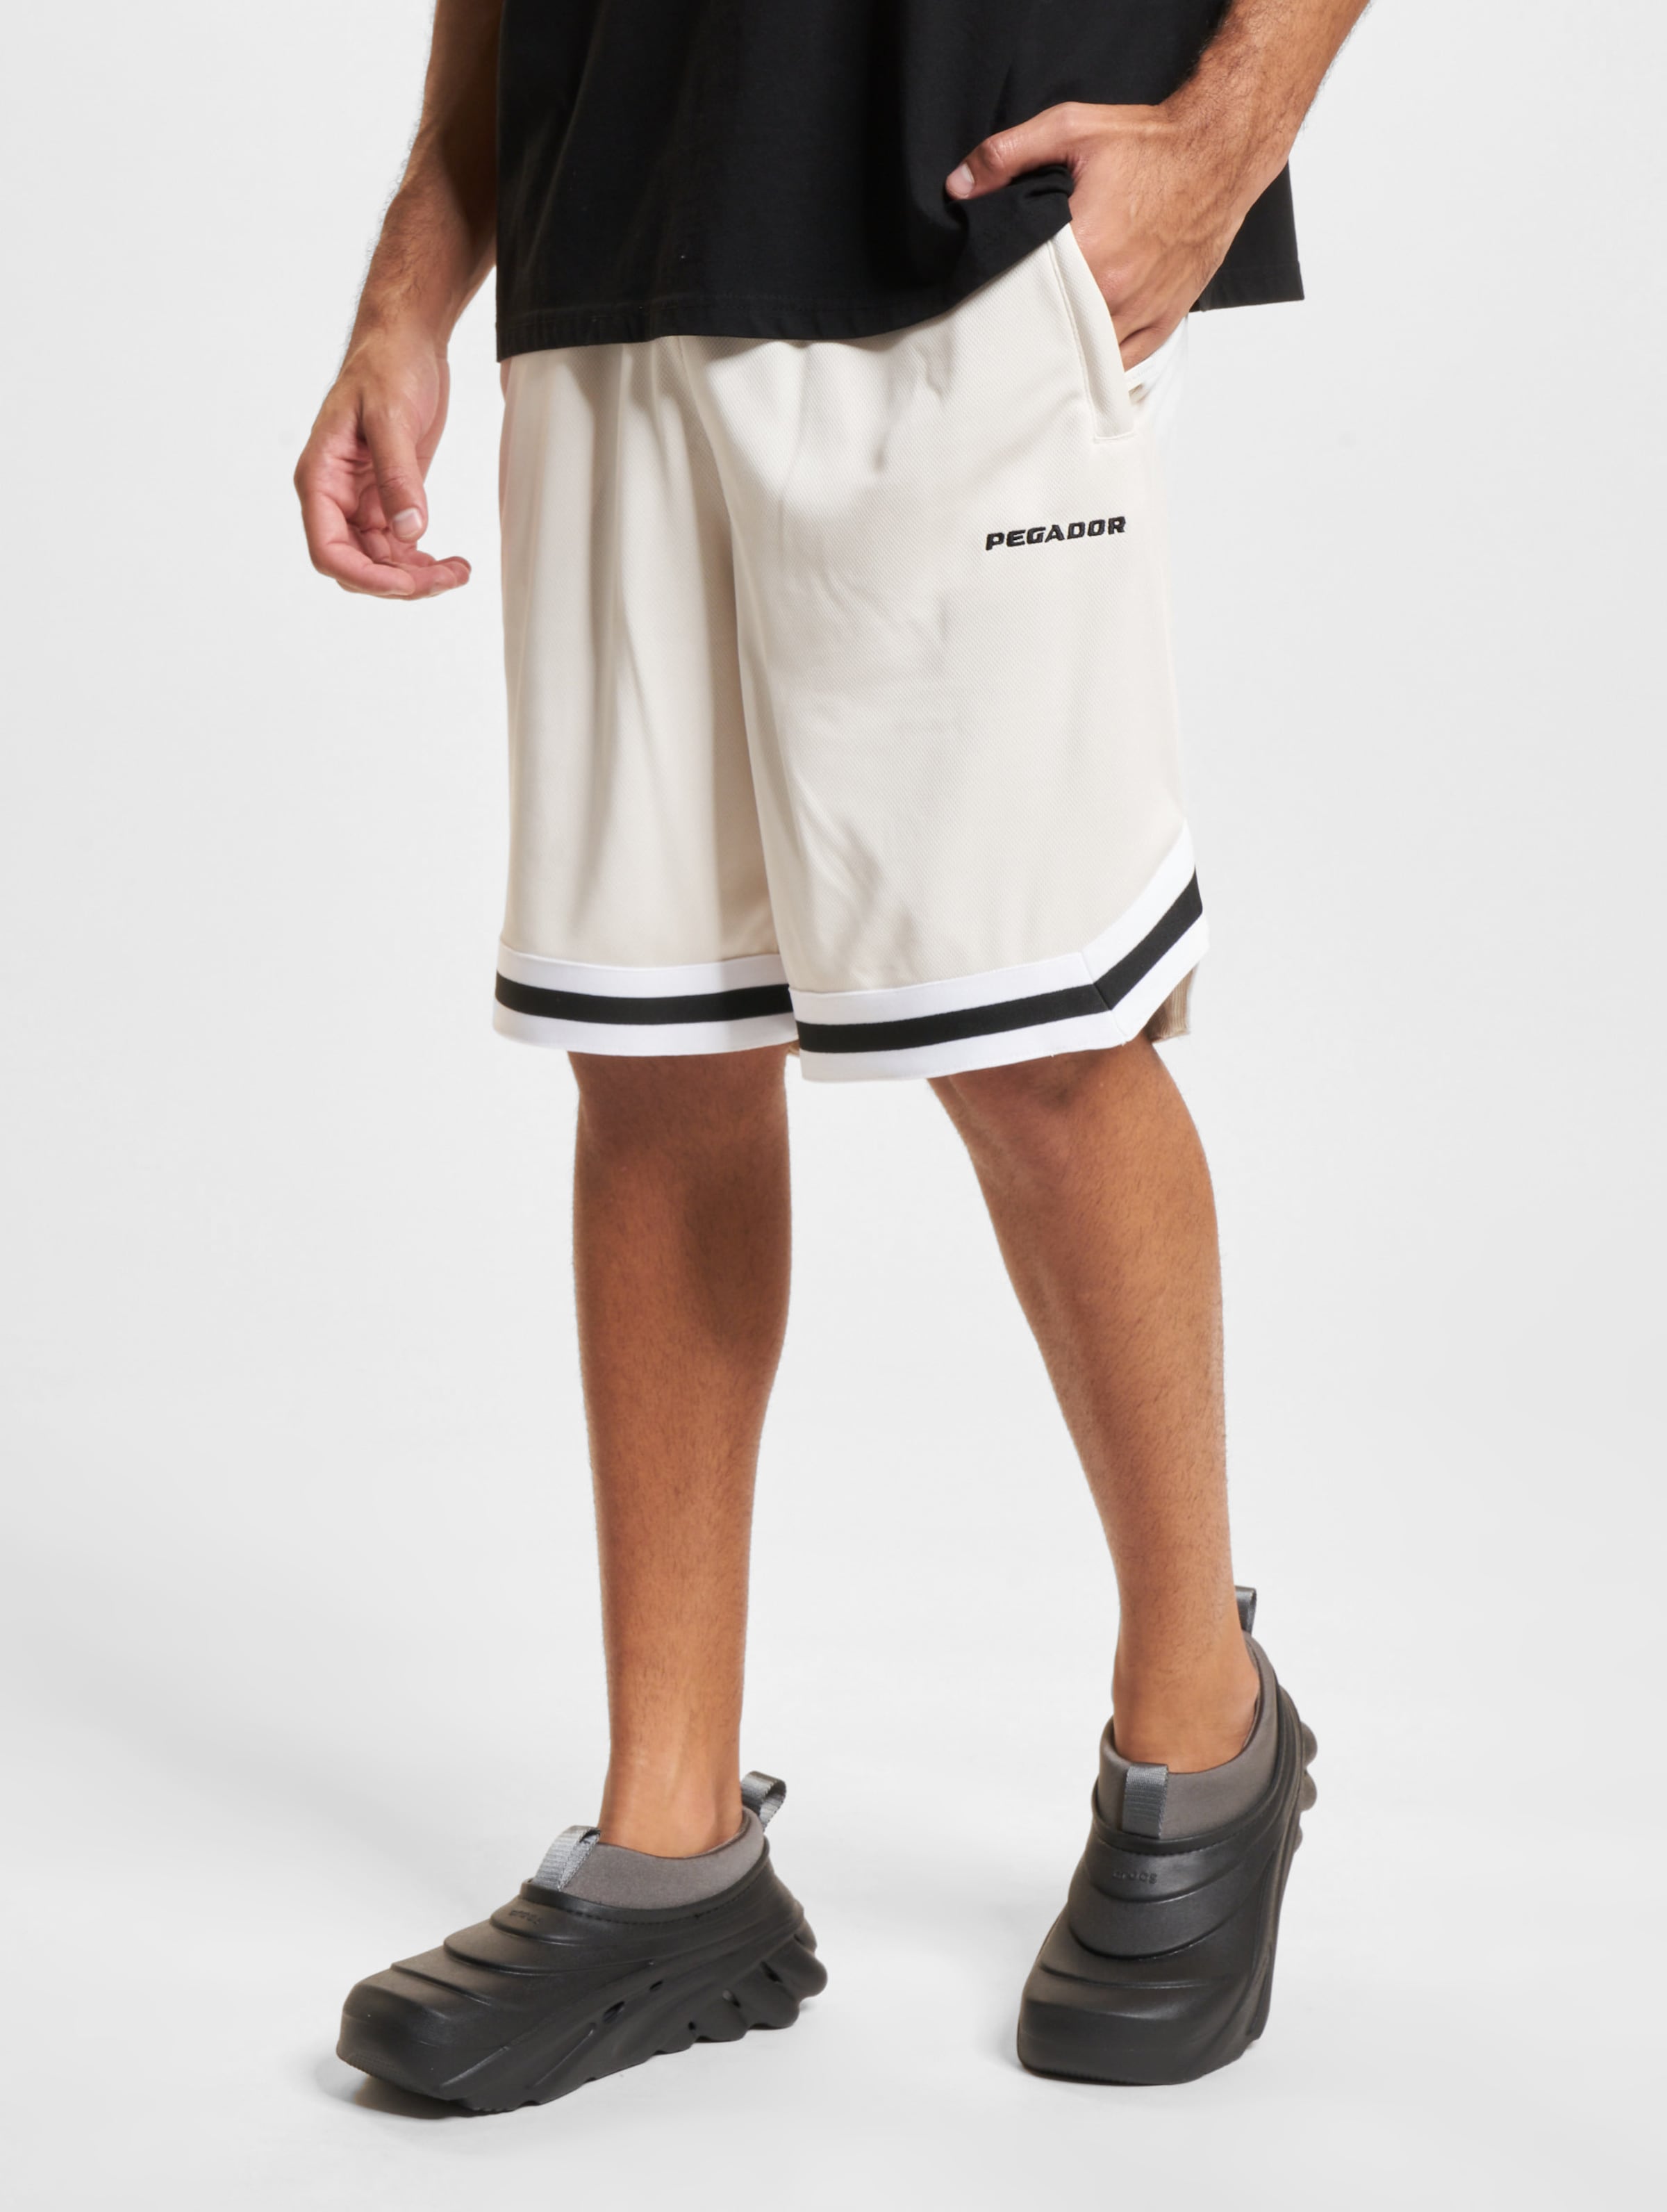 PEGADOR Lansing Basketball Shorts Männer,Unisex op kleur wit, Maat XXL